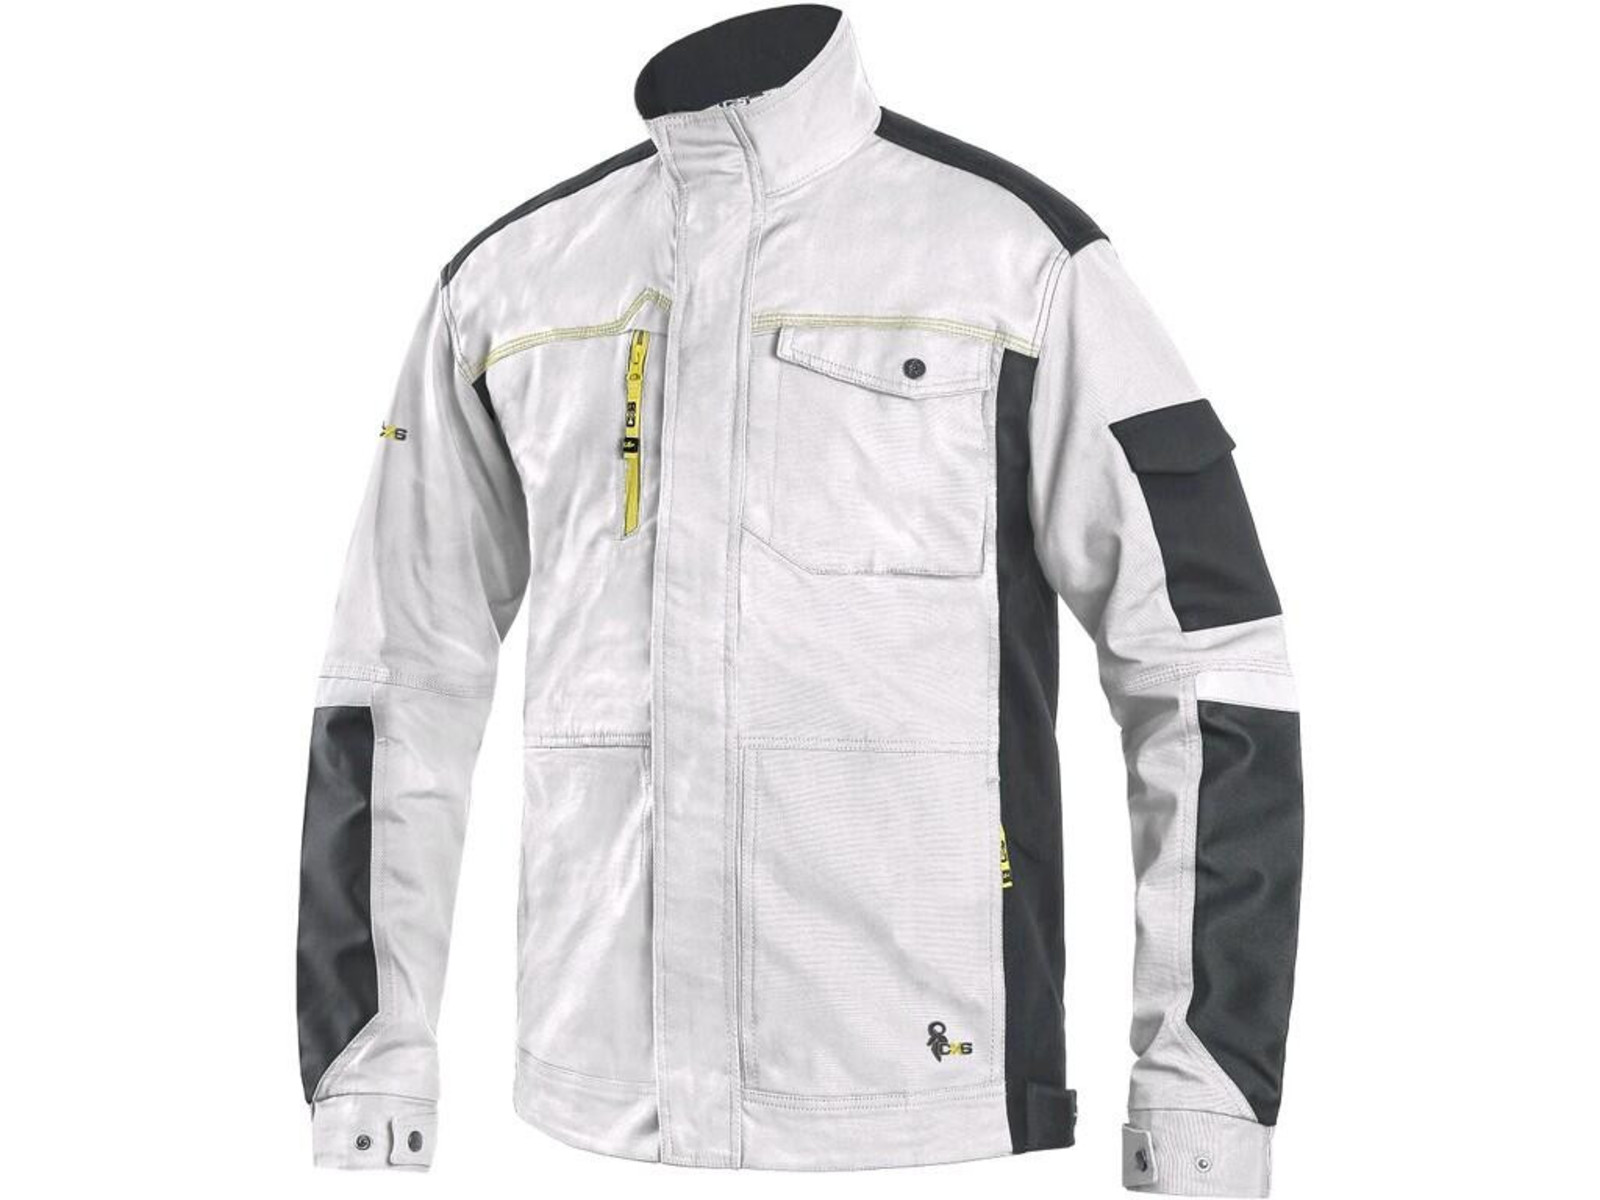 Strečová montérková bunda CXS Stretch - veľkosť: 54, farba: biela/sivá